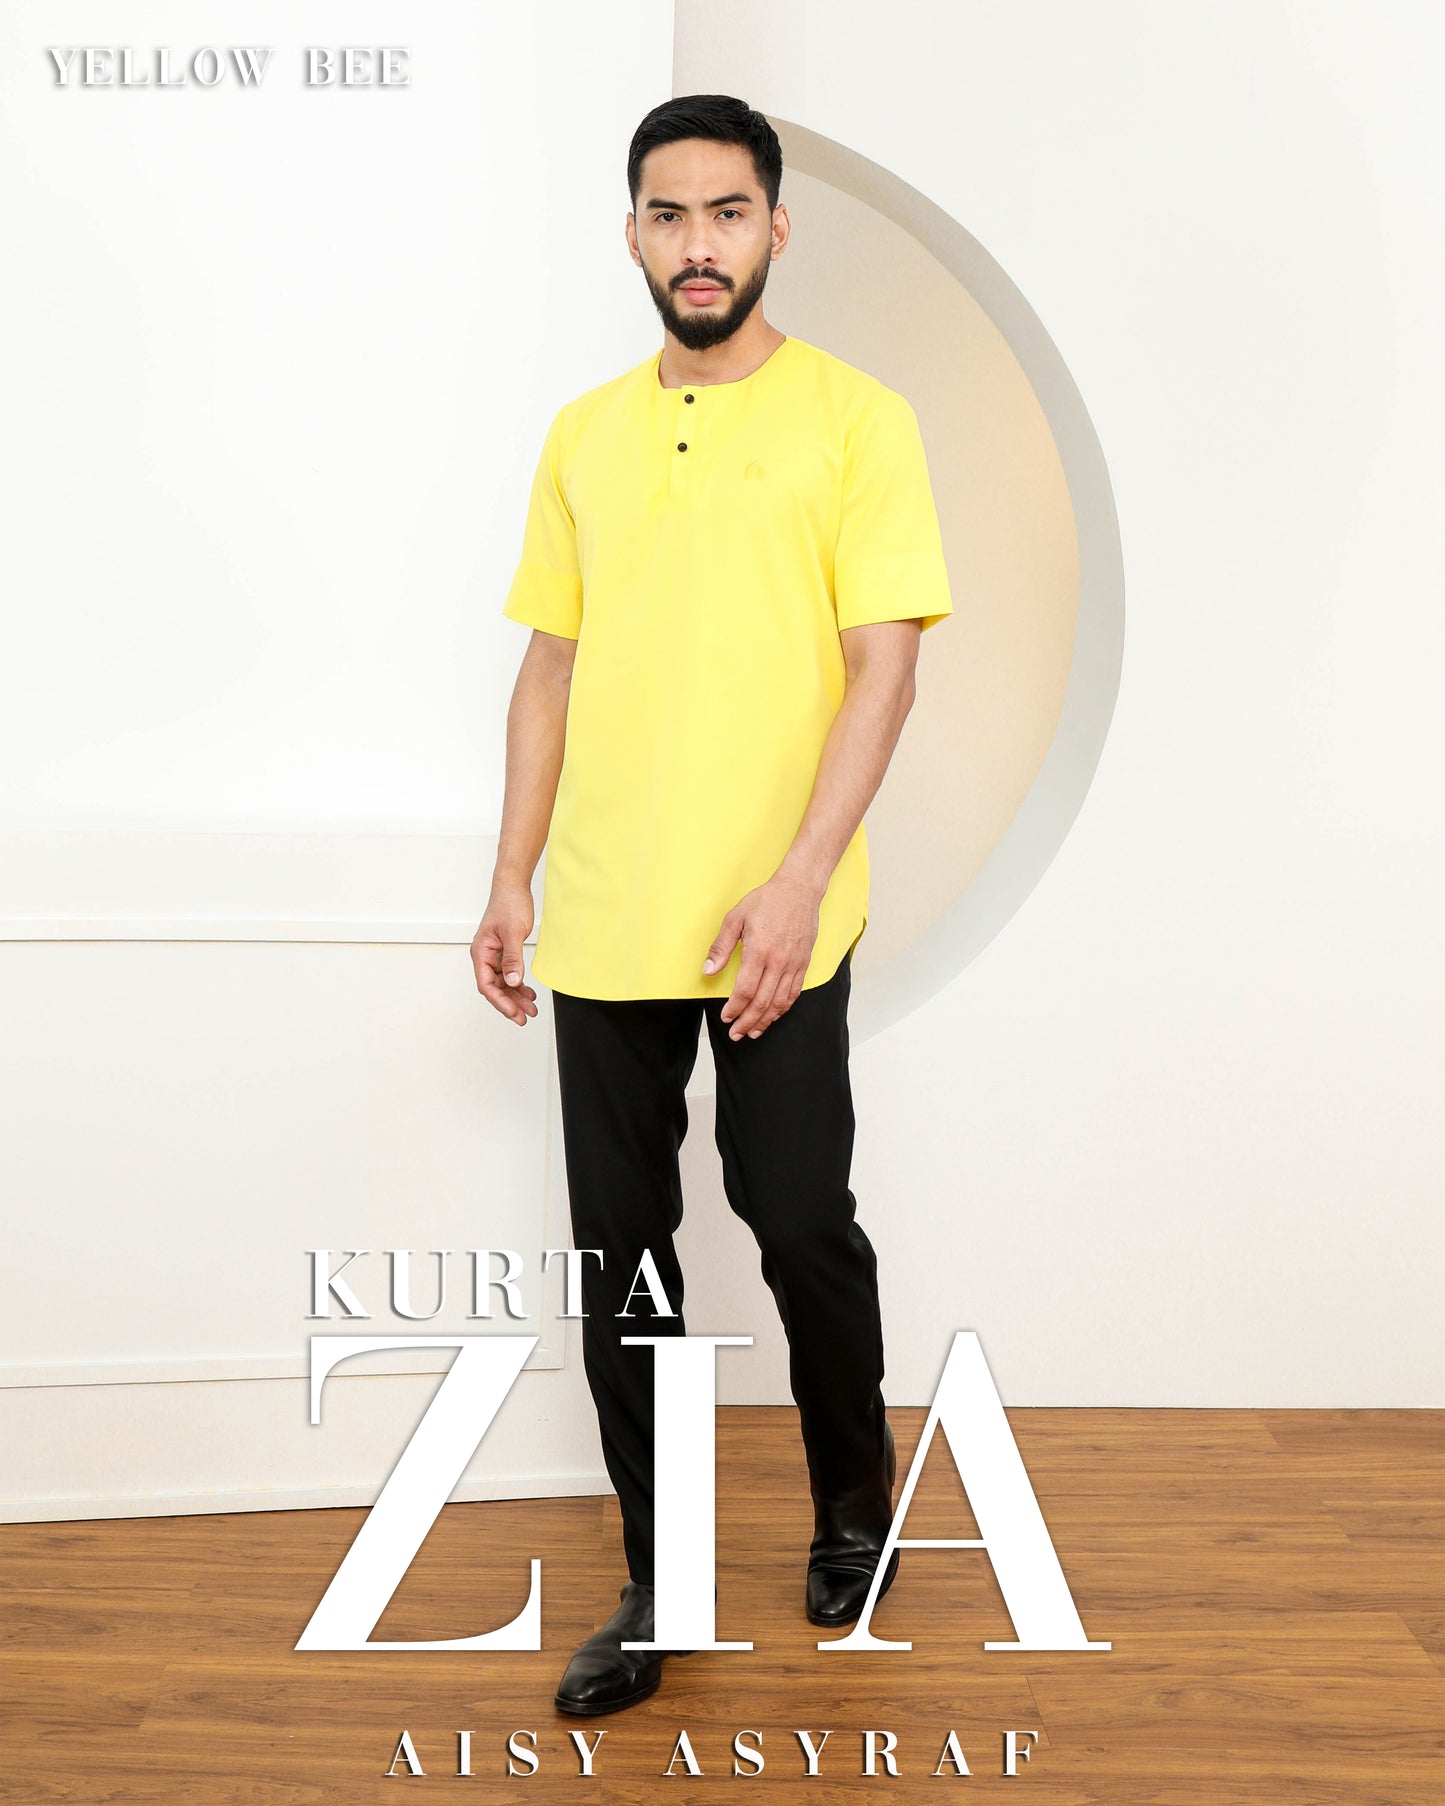 Kurta Zia - Yellow Bee